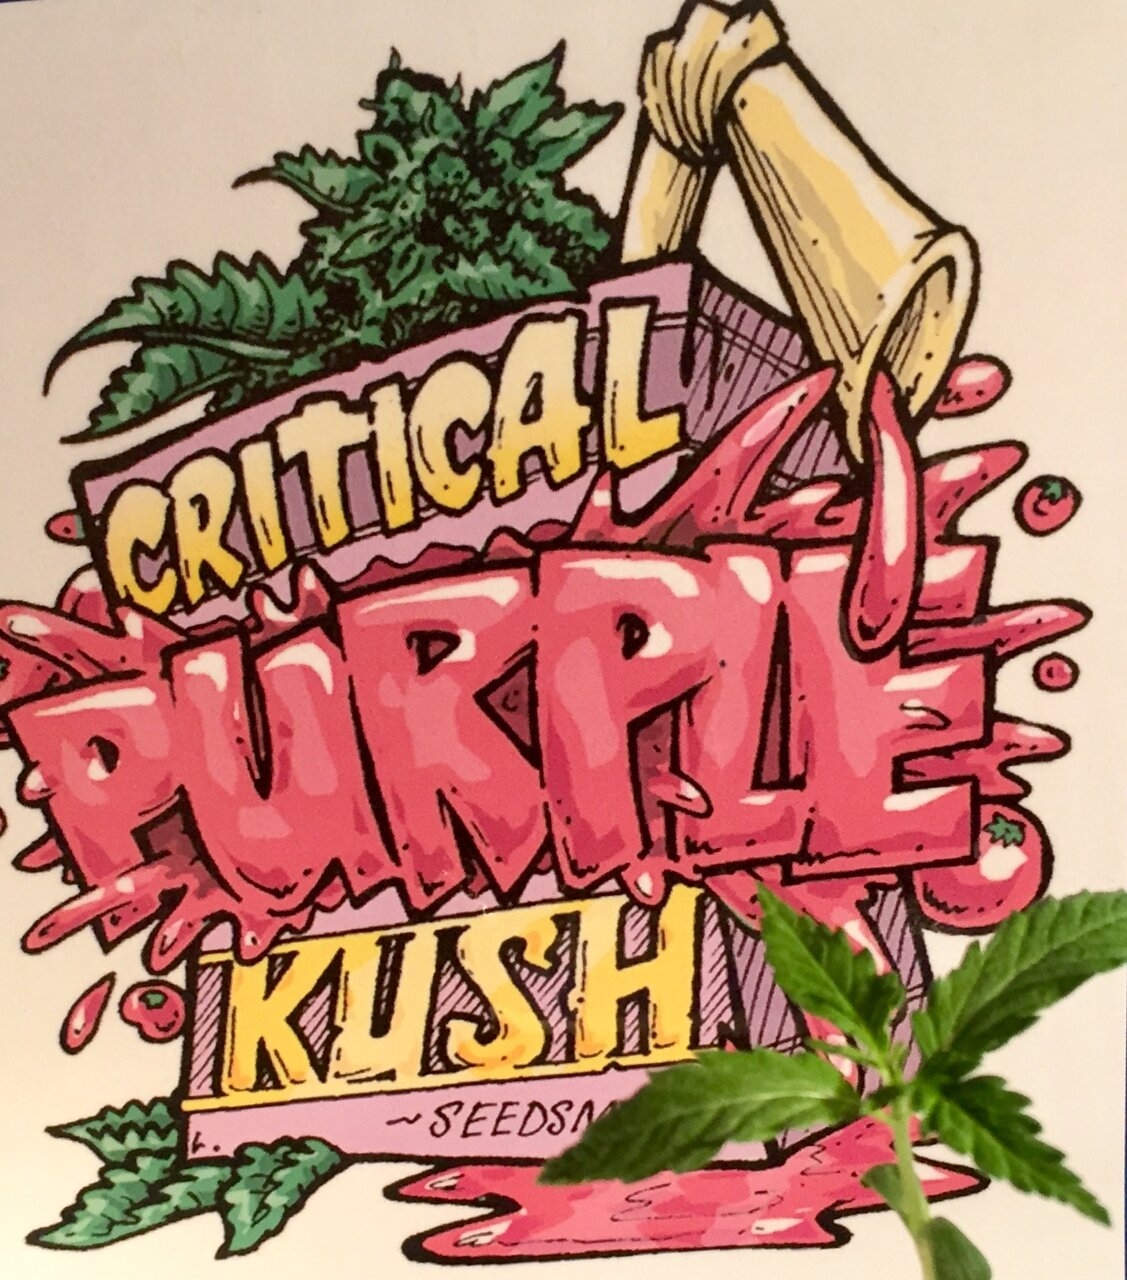 Critical Purple Kush